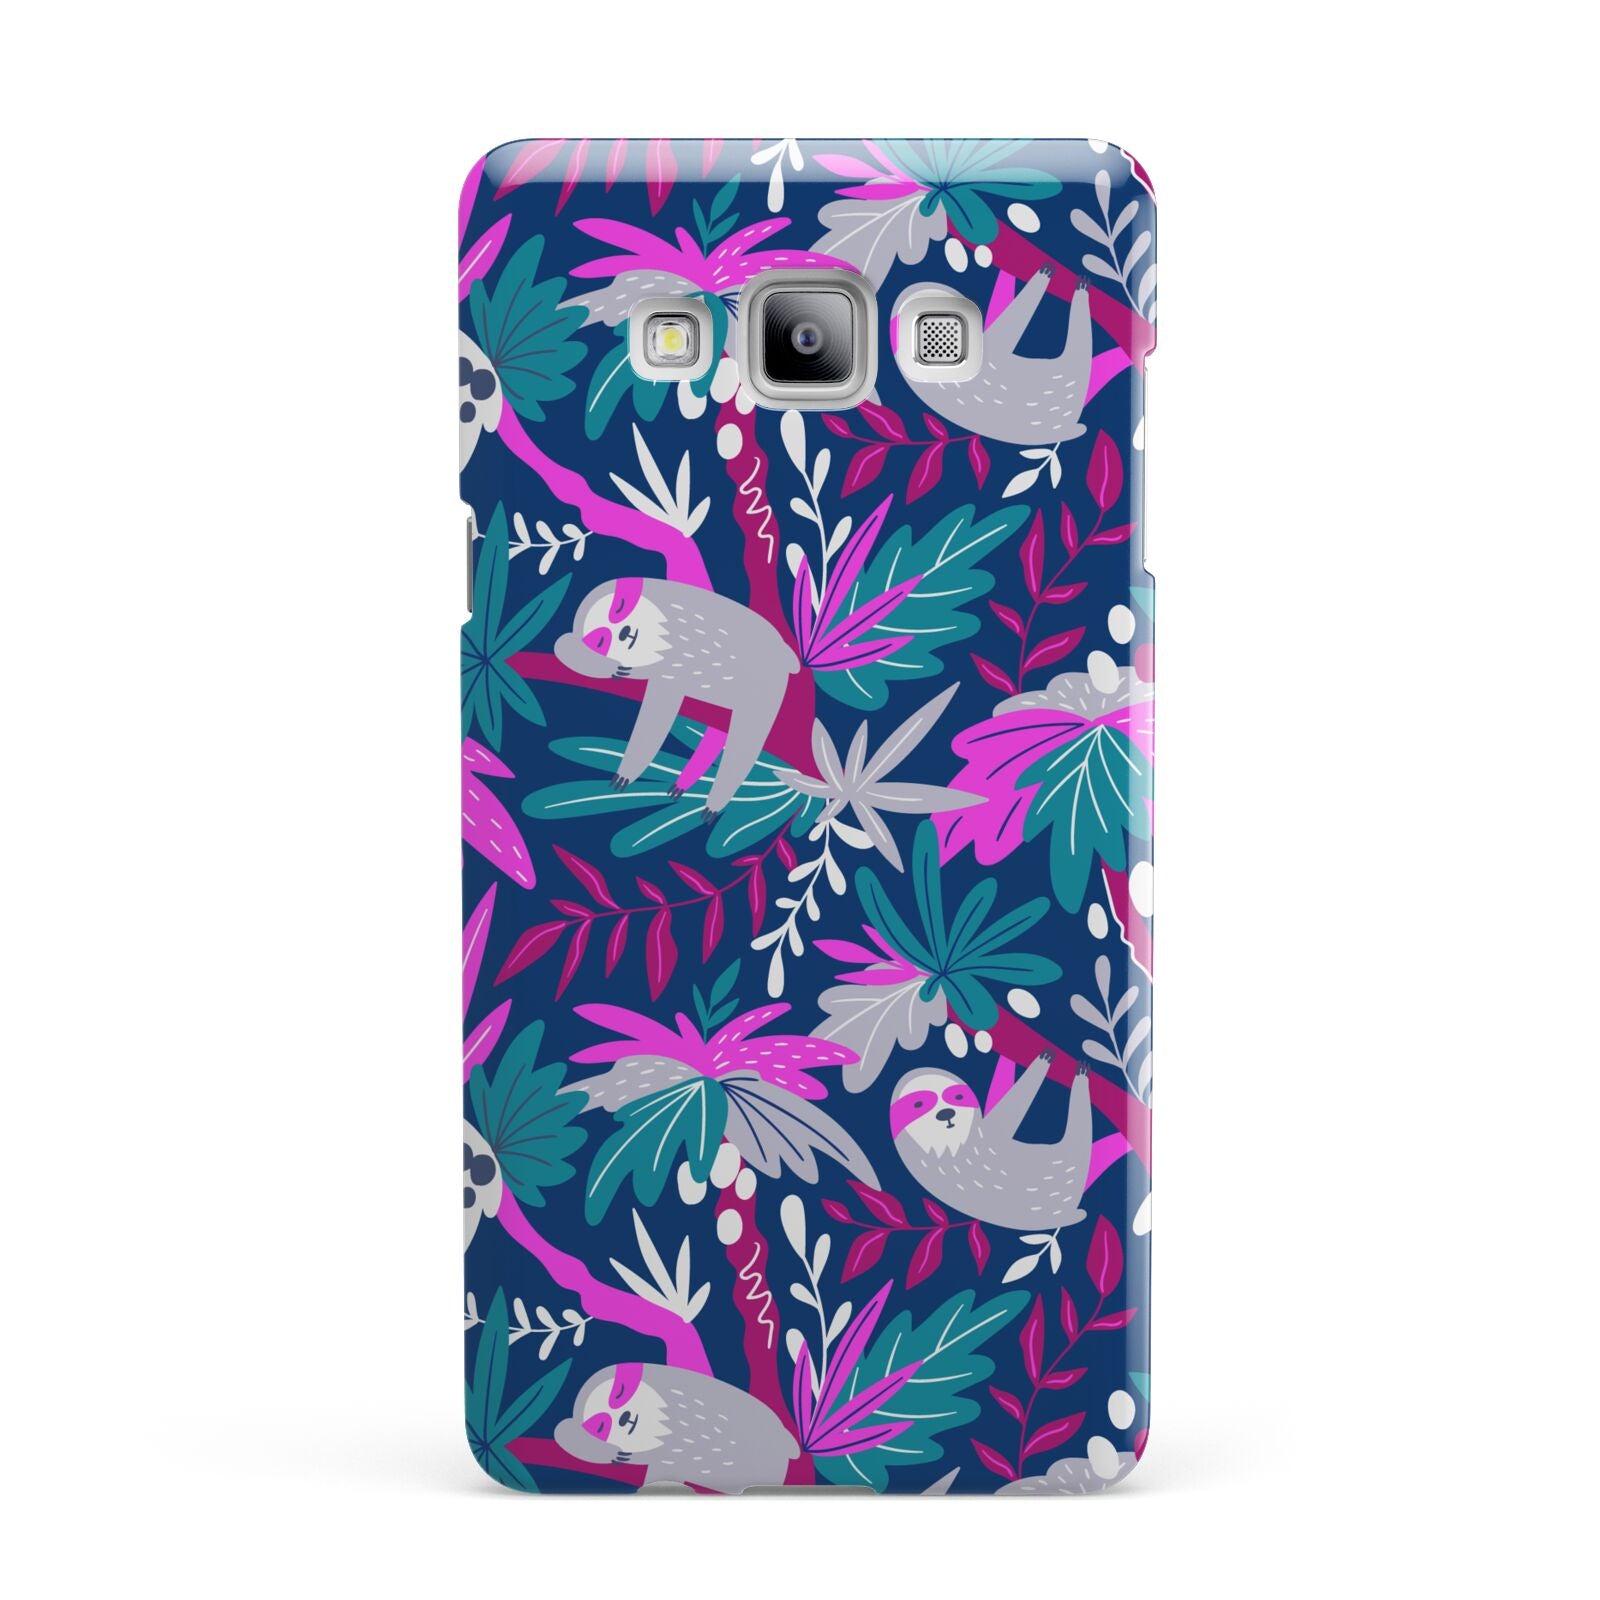 Sloth Samsung Galaxy A7 2015 Case